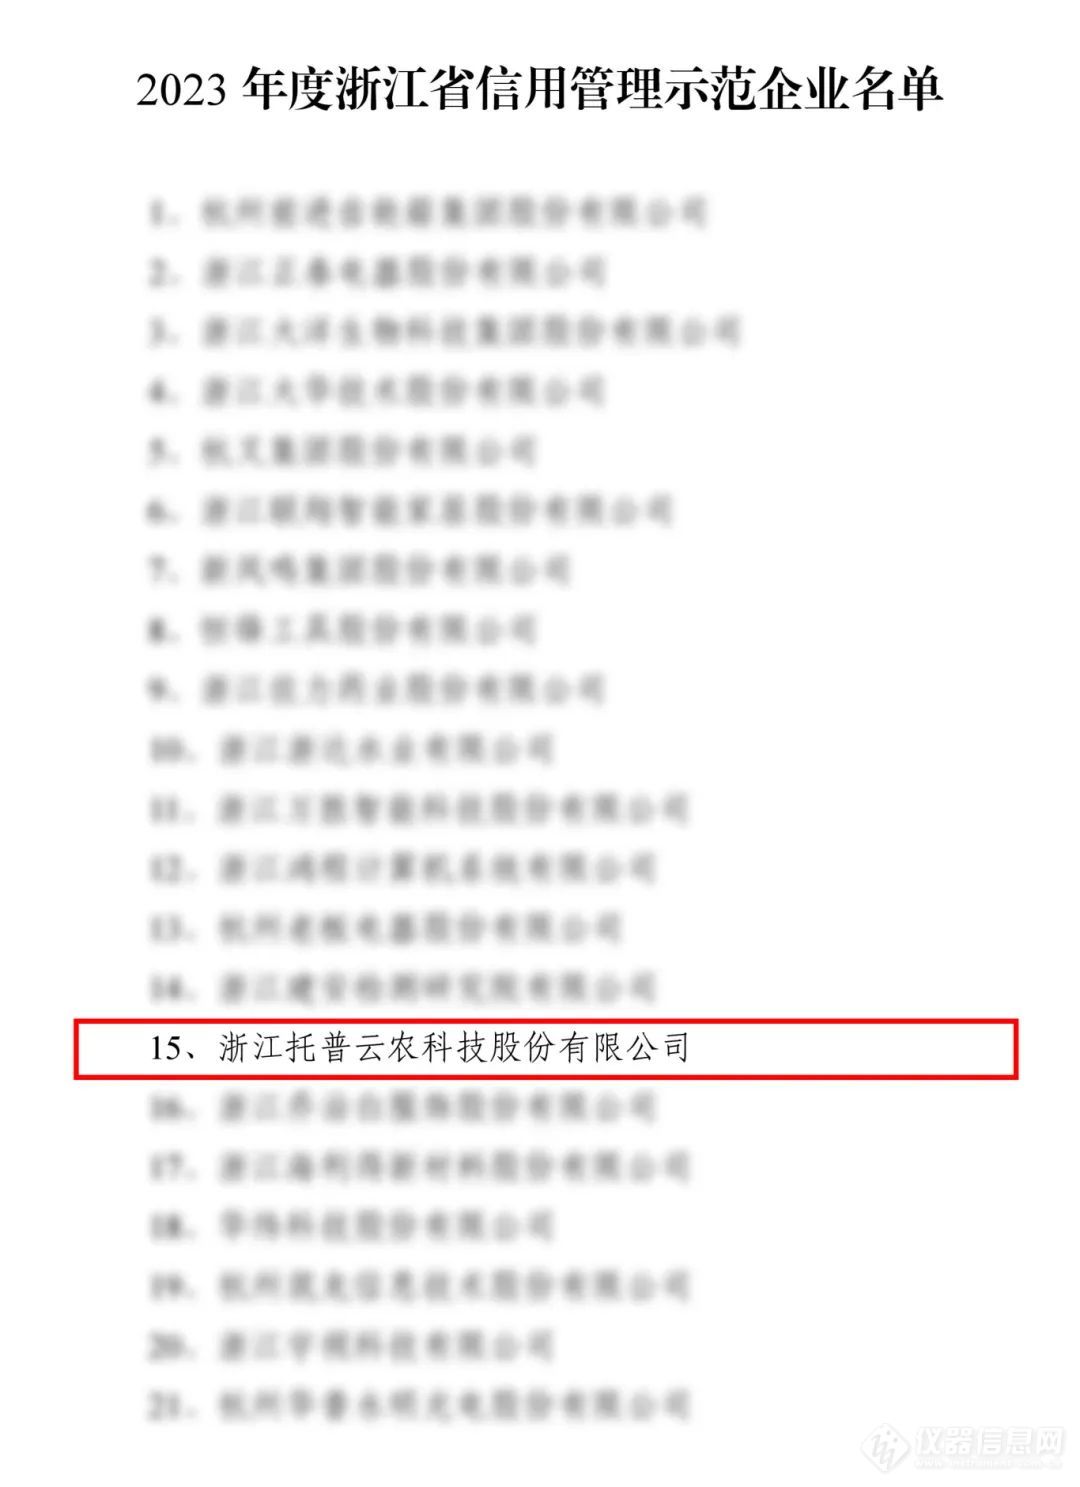 托普云农入选2023年度浙江省信用管理示范企业名单